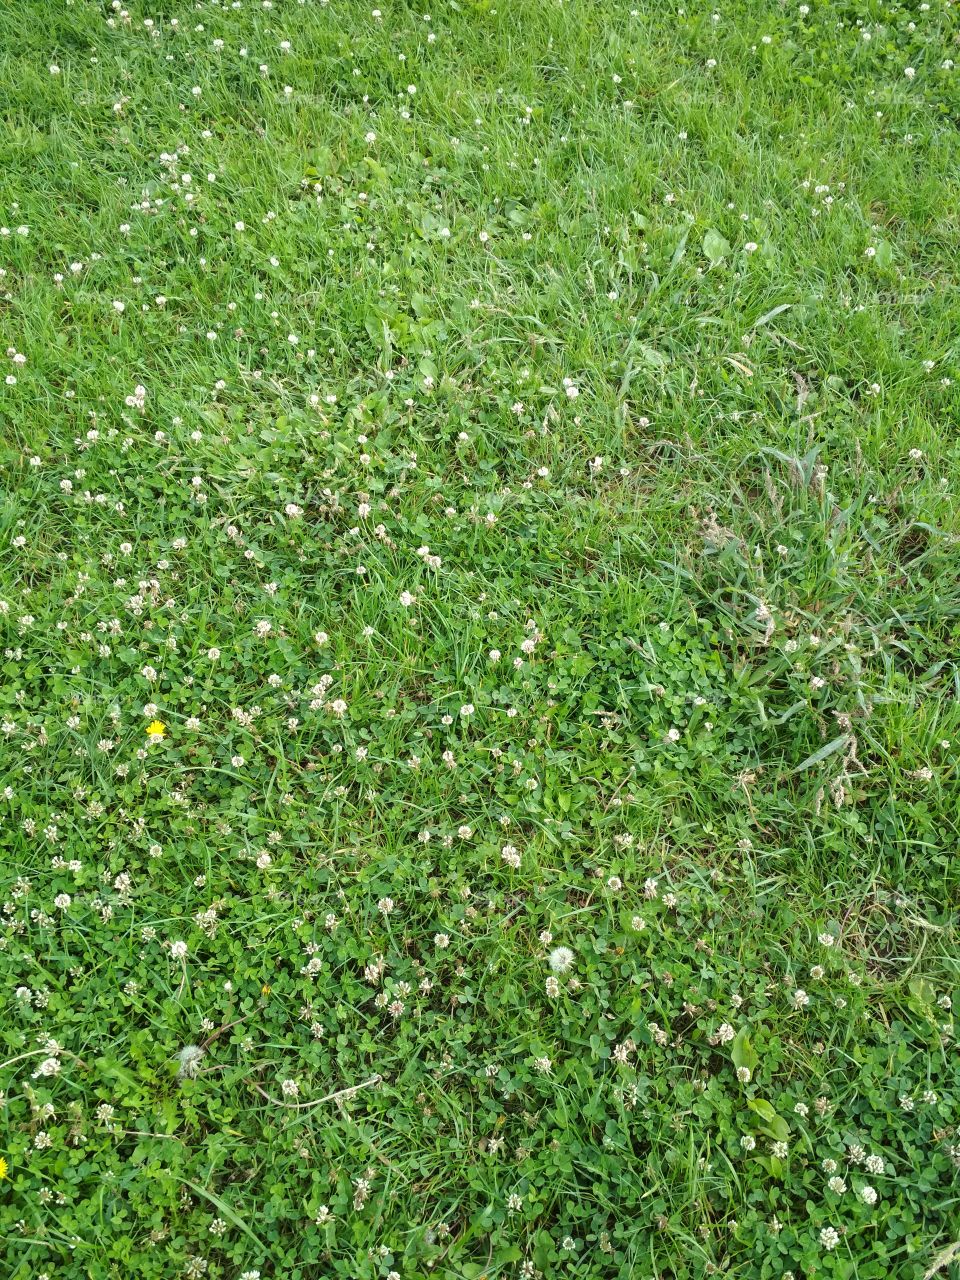 The grass